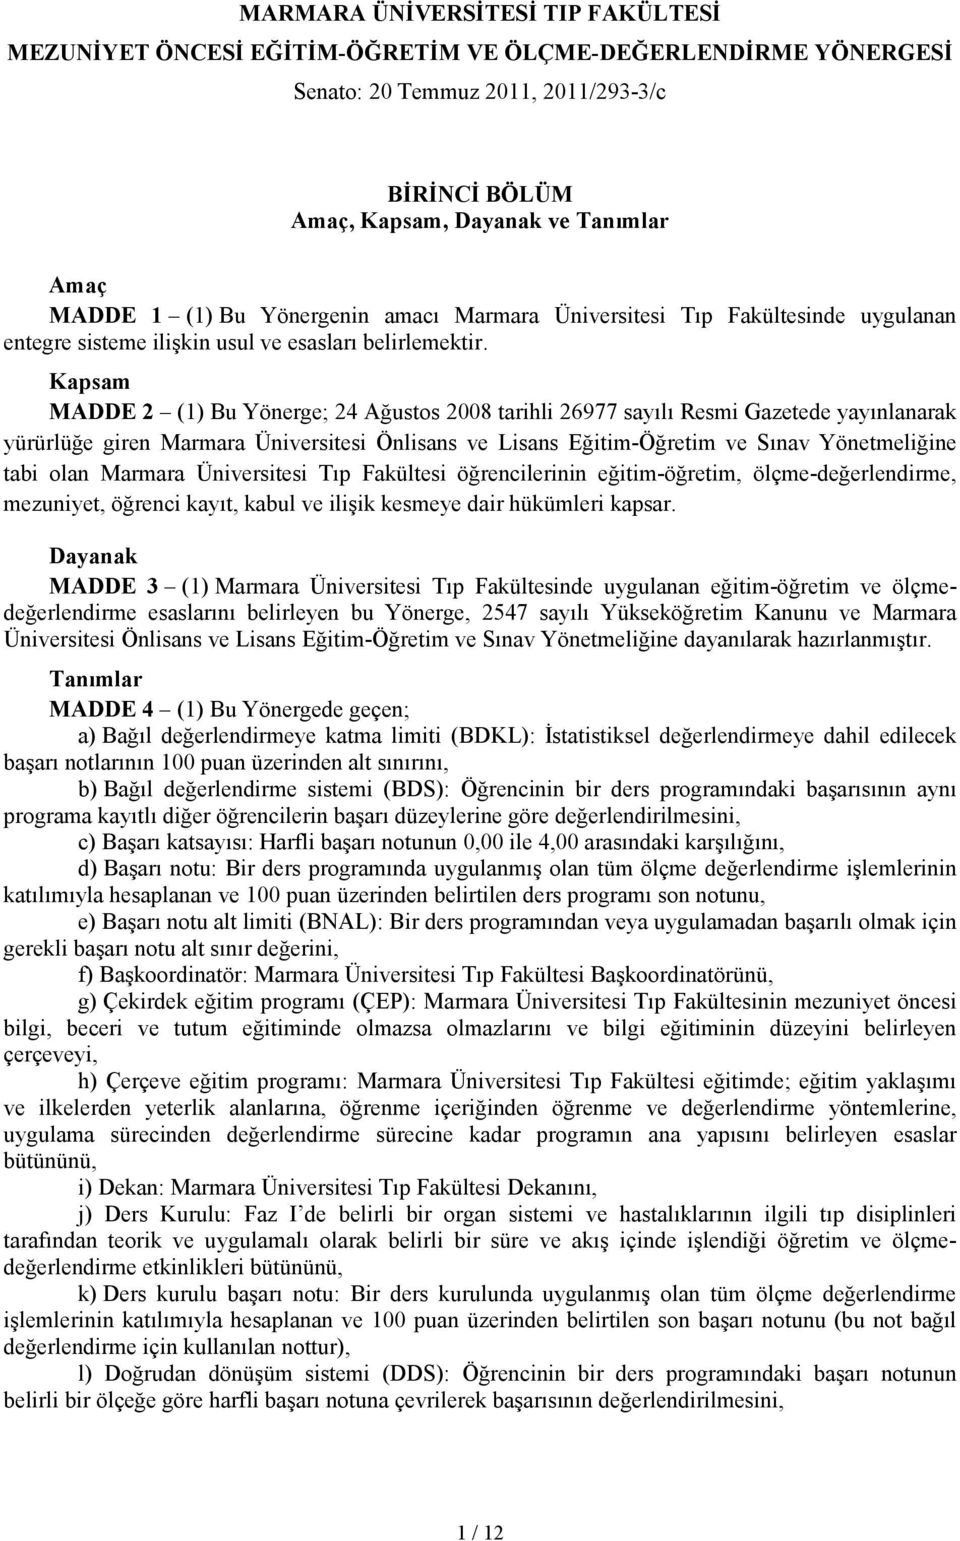 Kapsam MADDE 2 (1) Bu Yönerge; 24 Ağustos 2008 tarihli 26977 sayılı Resmi Gazetede yayınlanarak yürürlüğe giren Marmara Üniversitesi Önlisans ve Lisans Eğitim-Öğretim ve Sınav Yönetmeliğine tabi olan